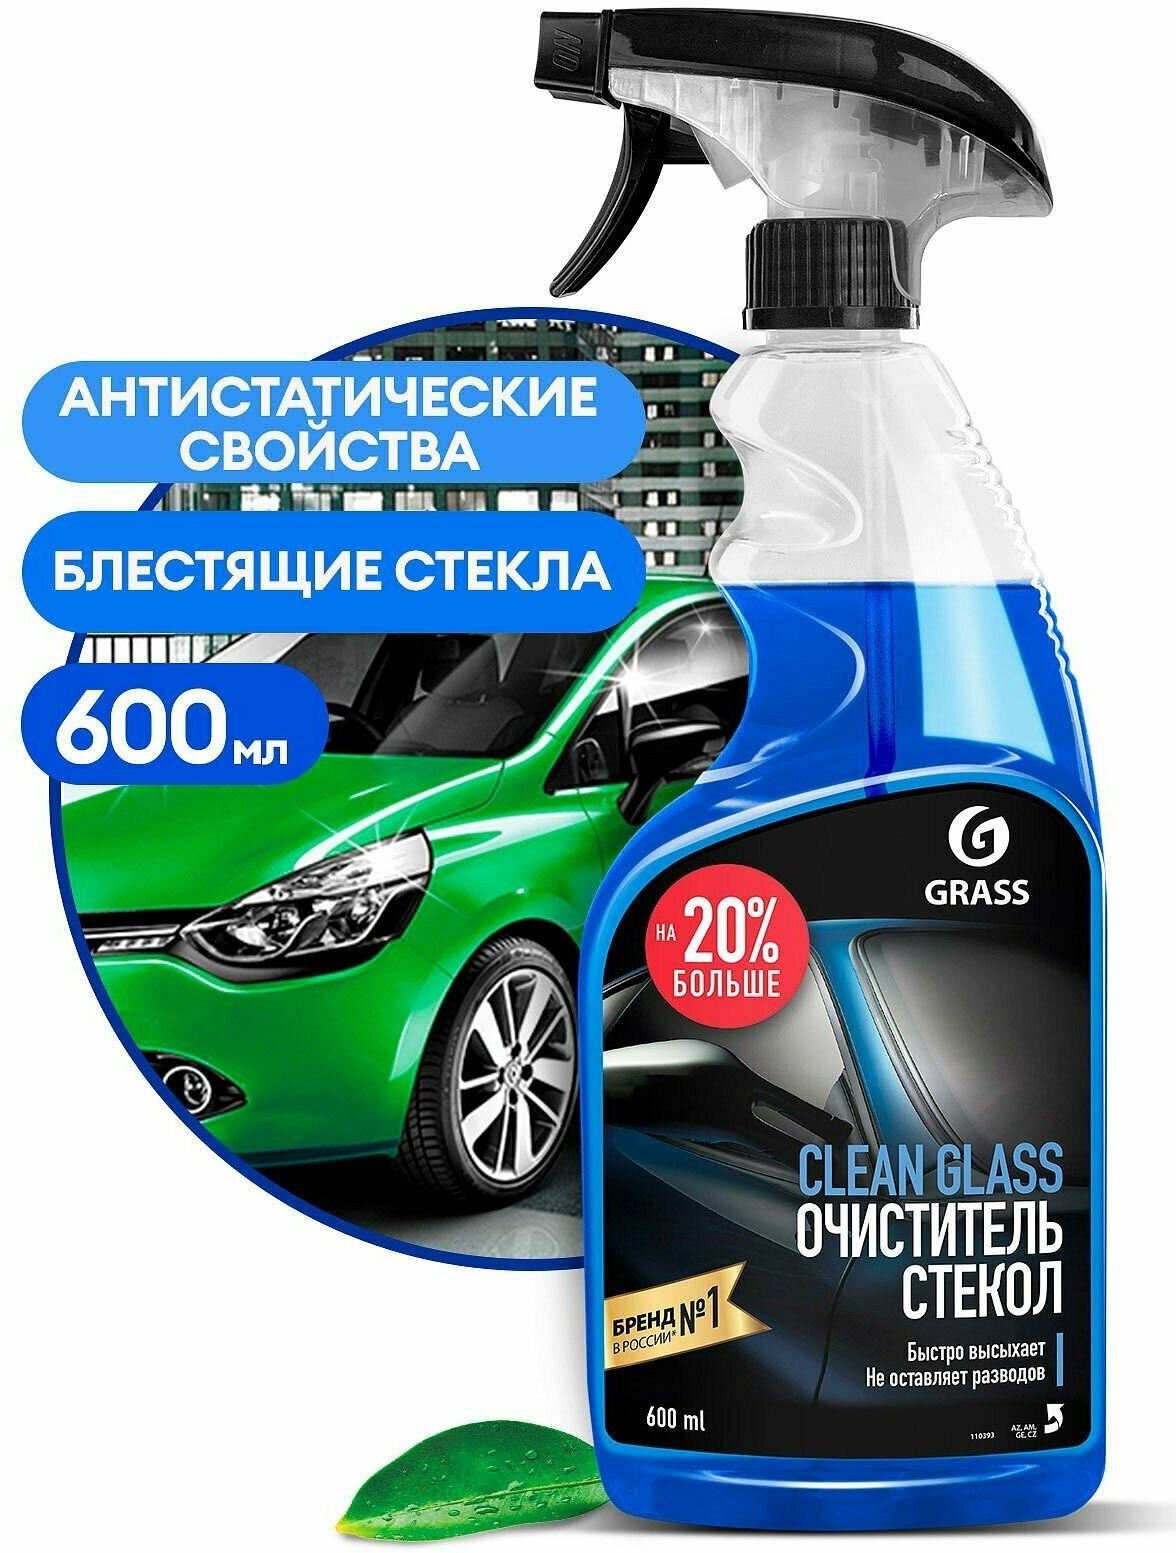 Очиститель стекол GRASS "Clean Glass" 600 гр